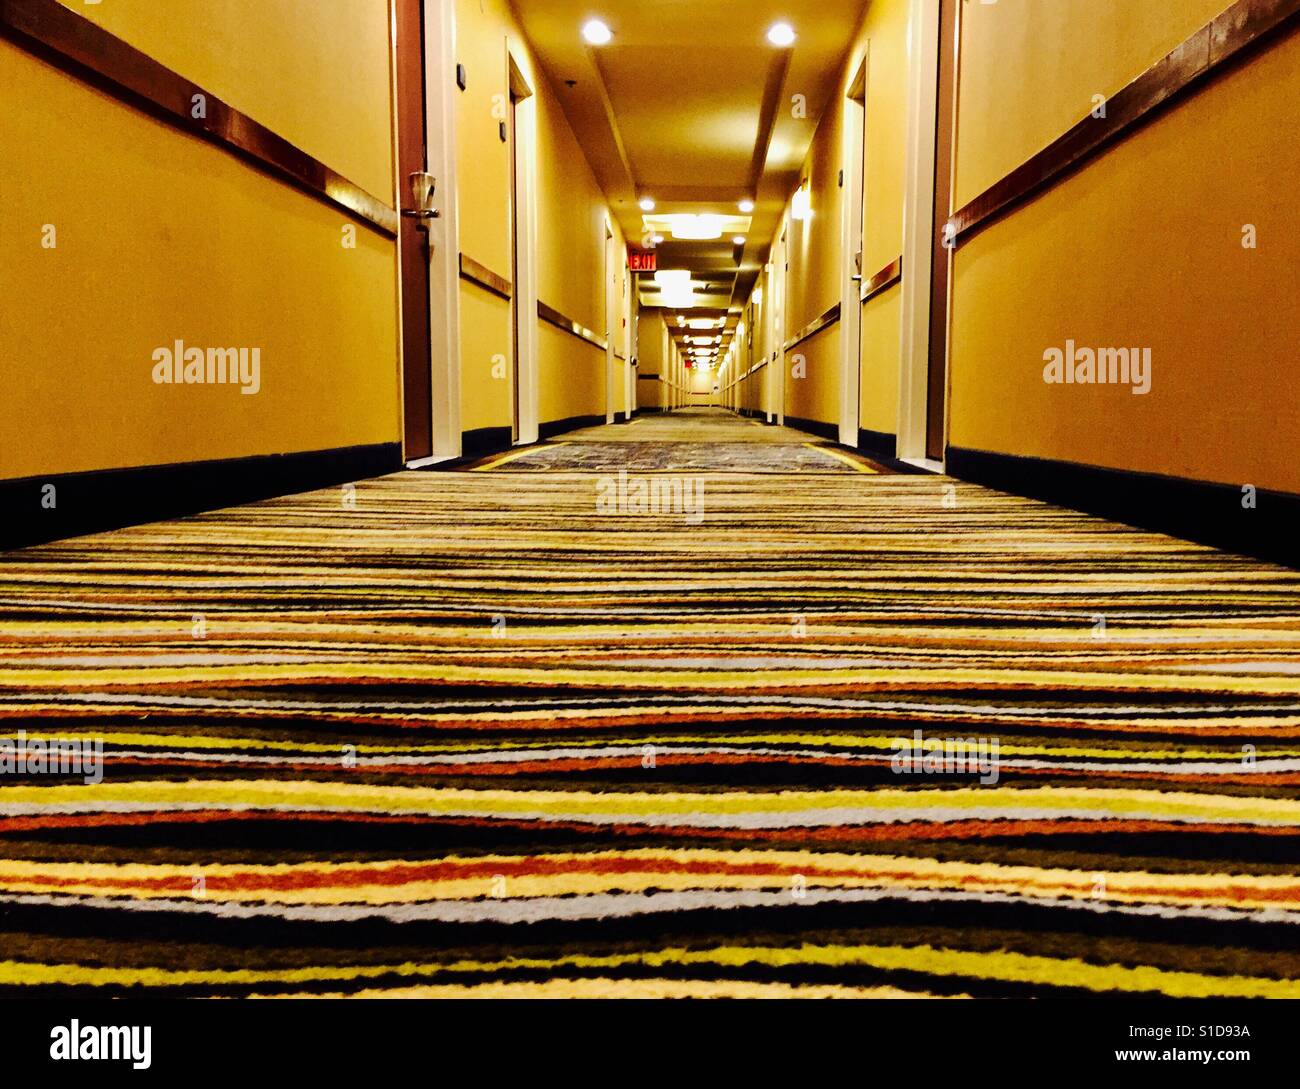 Hotel corridor Stock Photo